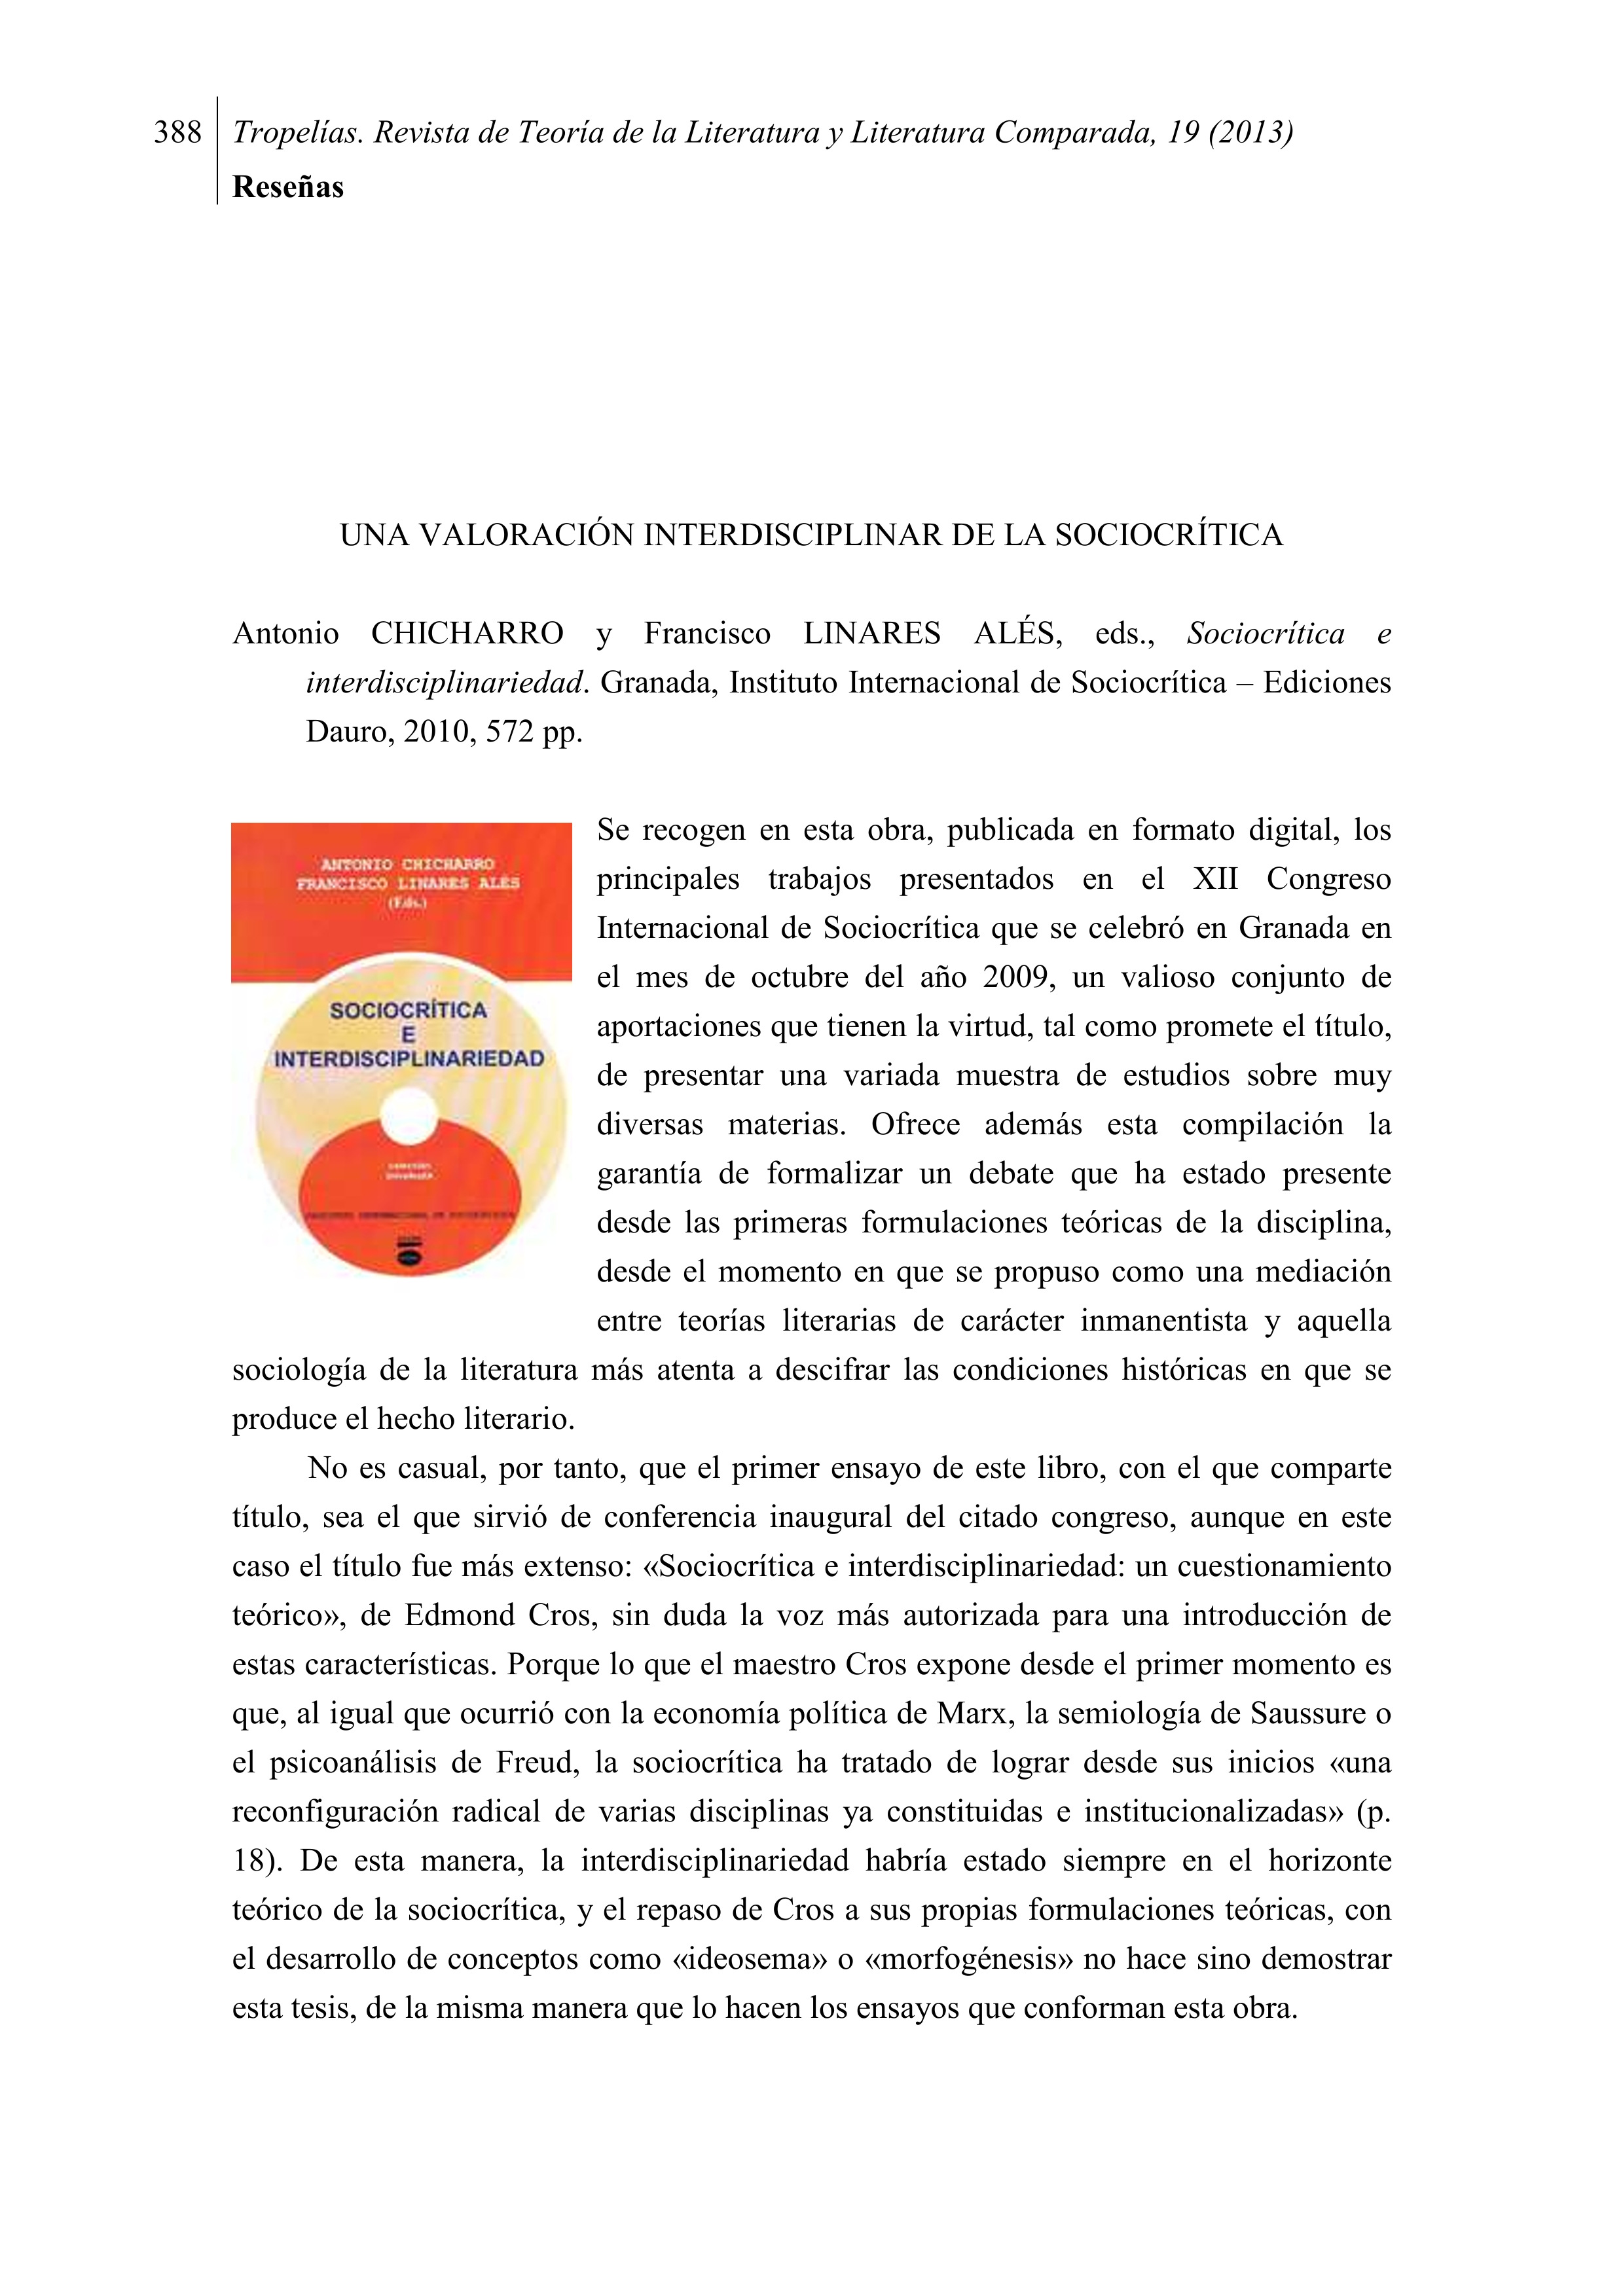 Antonio Chicharro y Francisco Linares Alés, eds., Sociocrítica e interdisciplinariedad